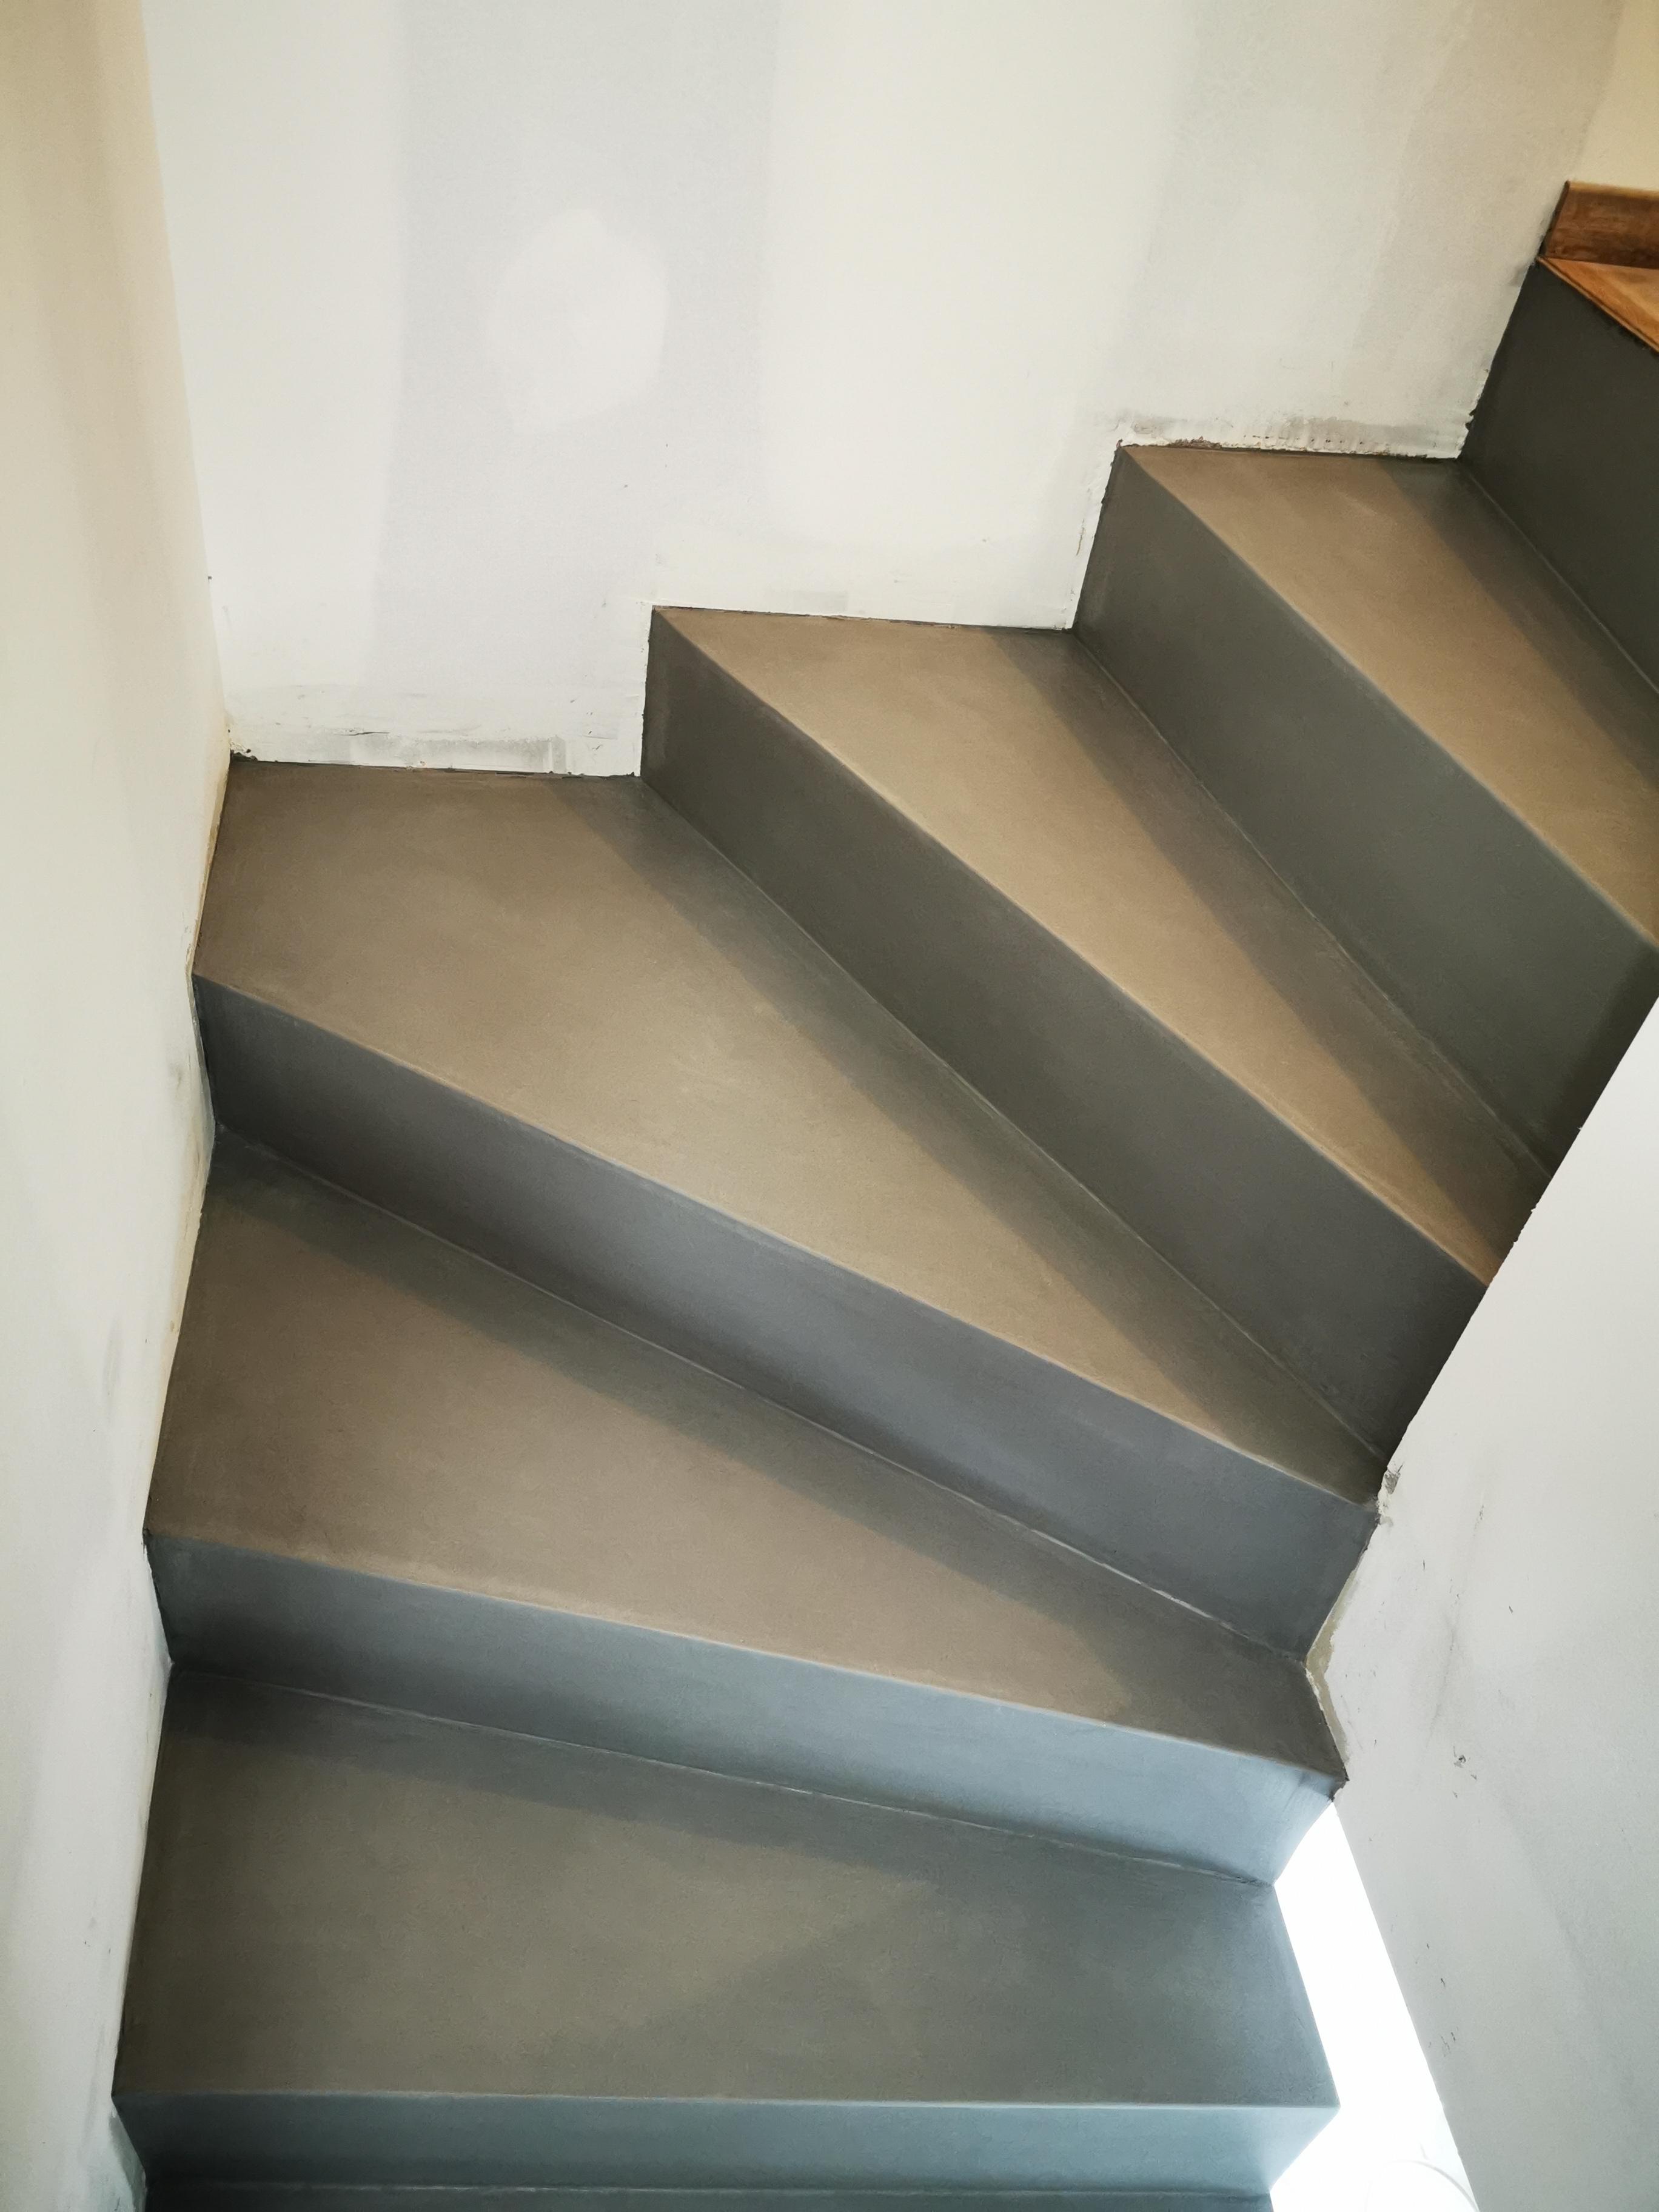 Béton ciré gris sur les marches balancées d'un escalier confortable dans une maison individuelle